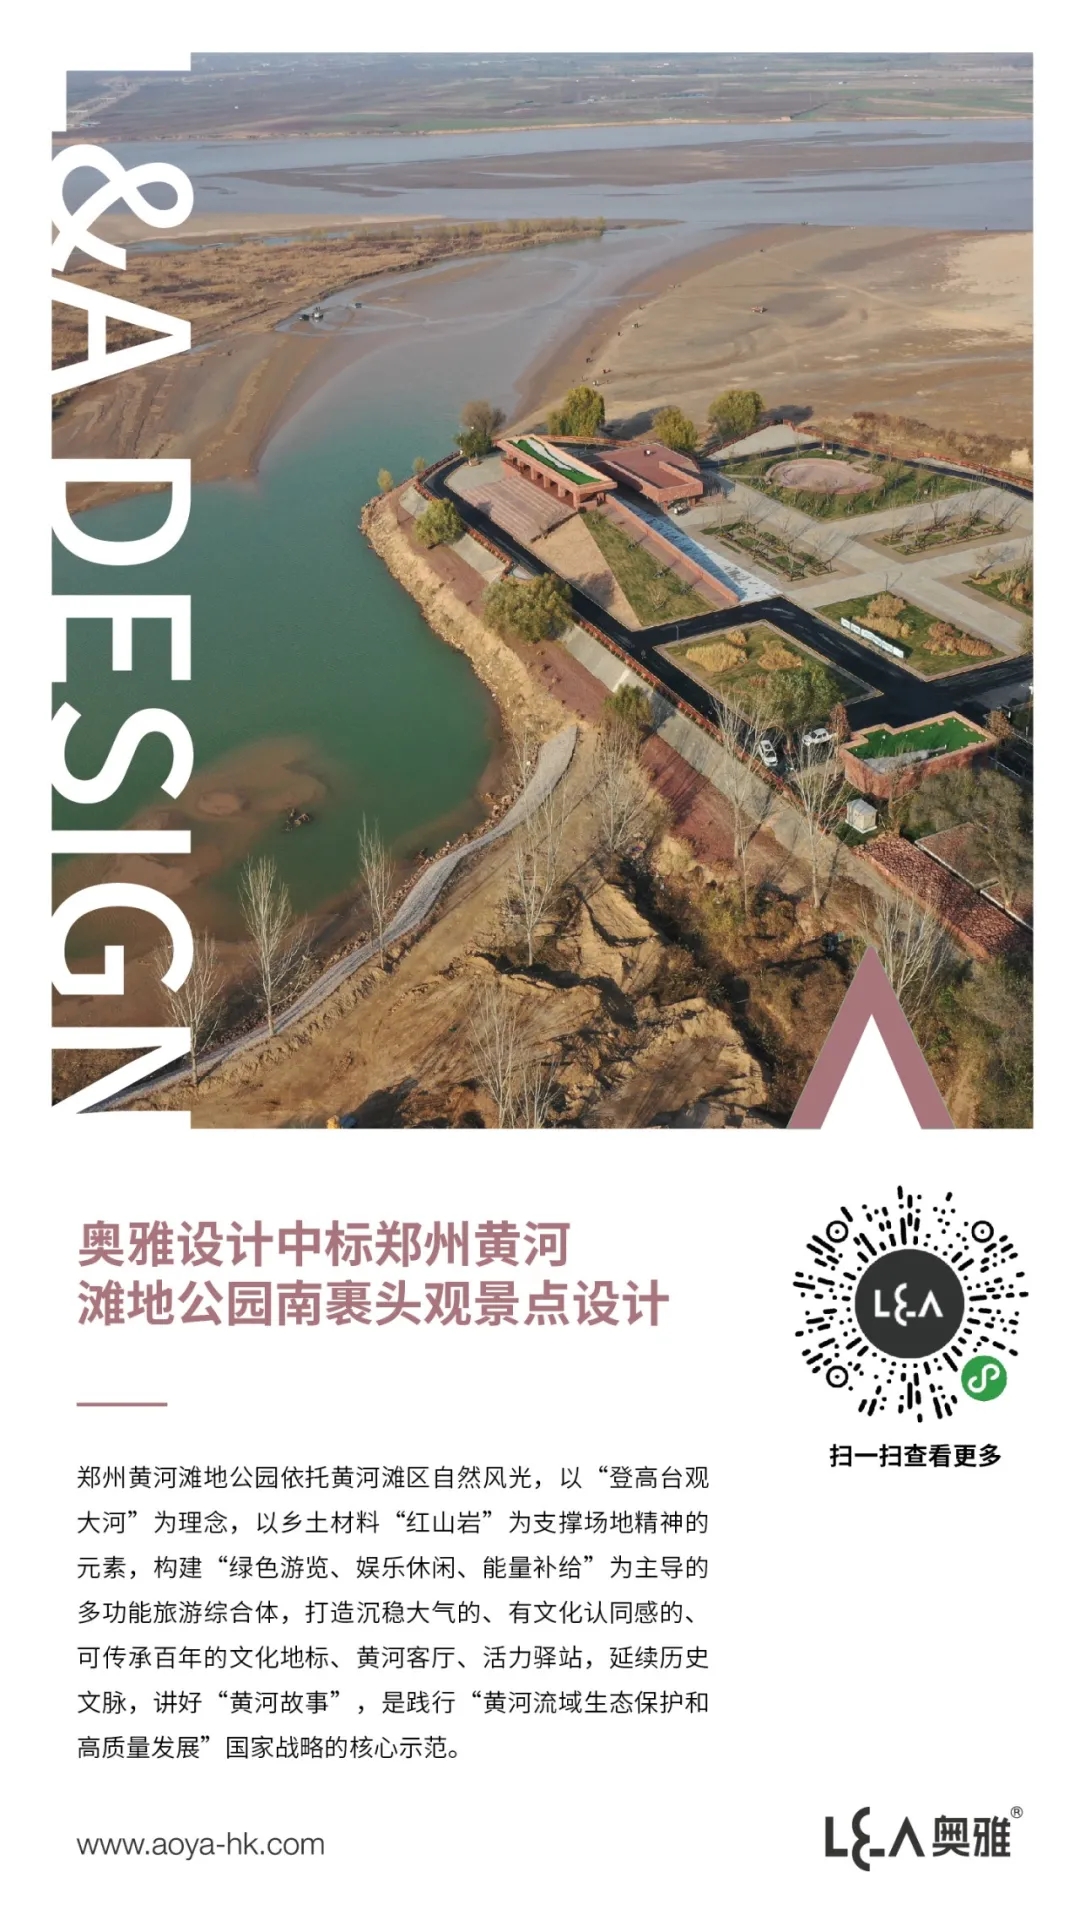 奥雅设计中标郑州黄河滩地公园南裹头观景点设计丨喜讯